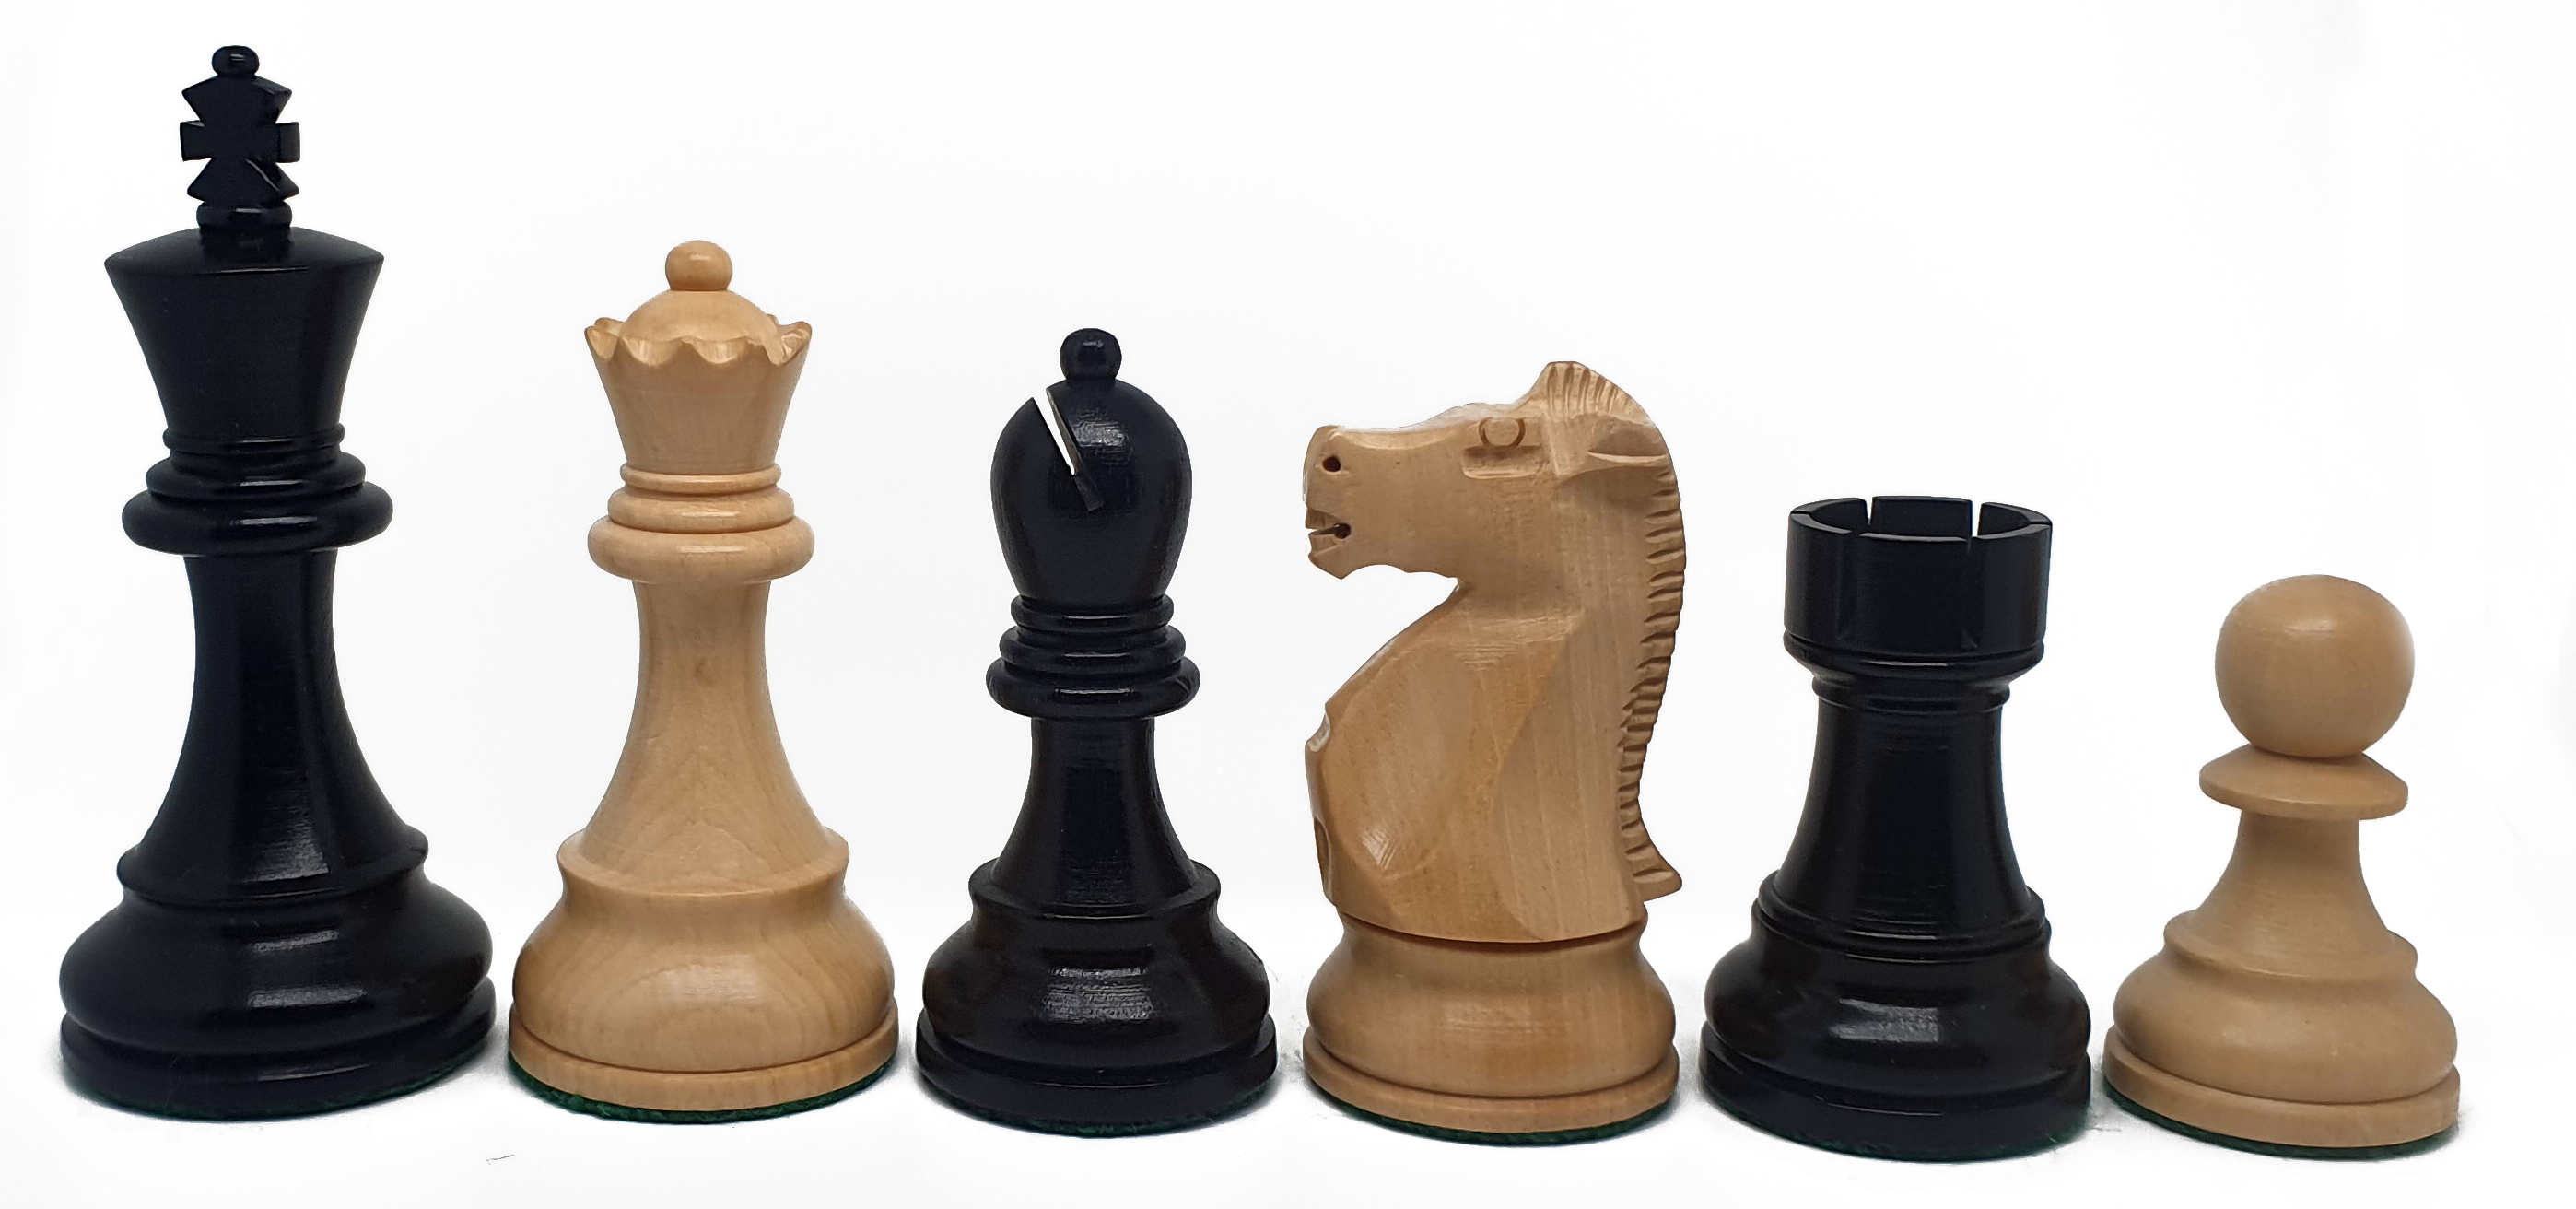 VI/ Piezas de ajedrez modelo Fischer - Spassky "3,75" Ebanizado. 5199